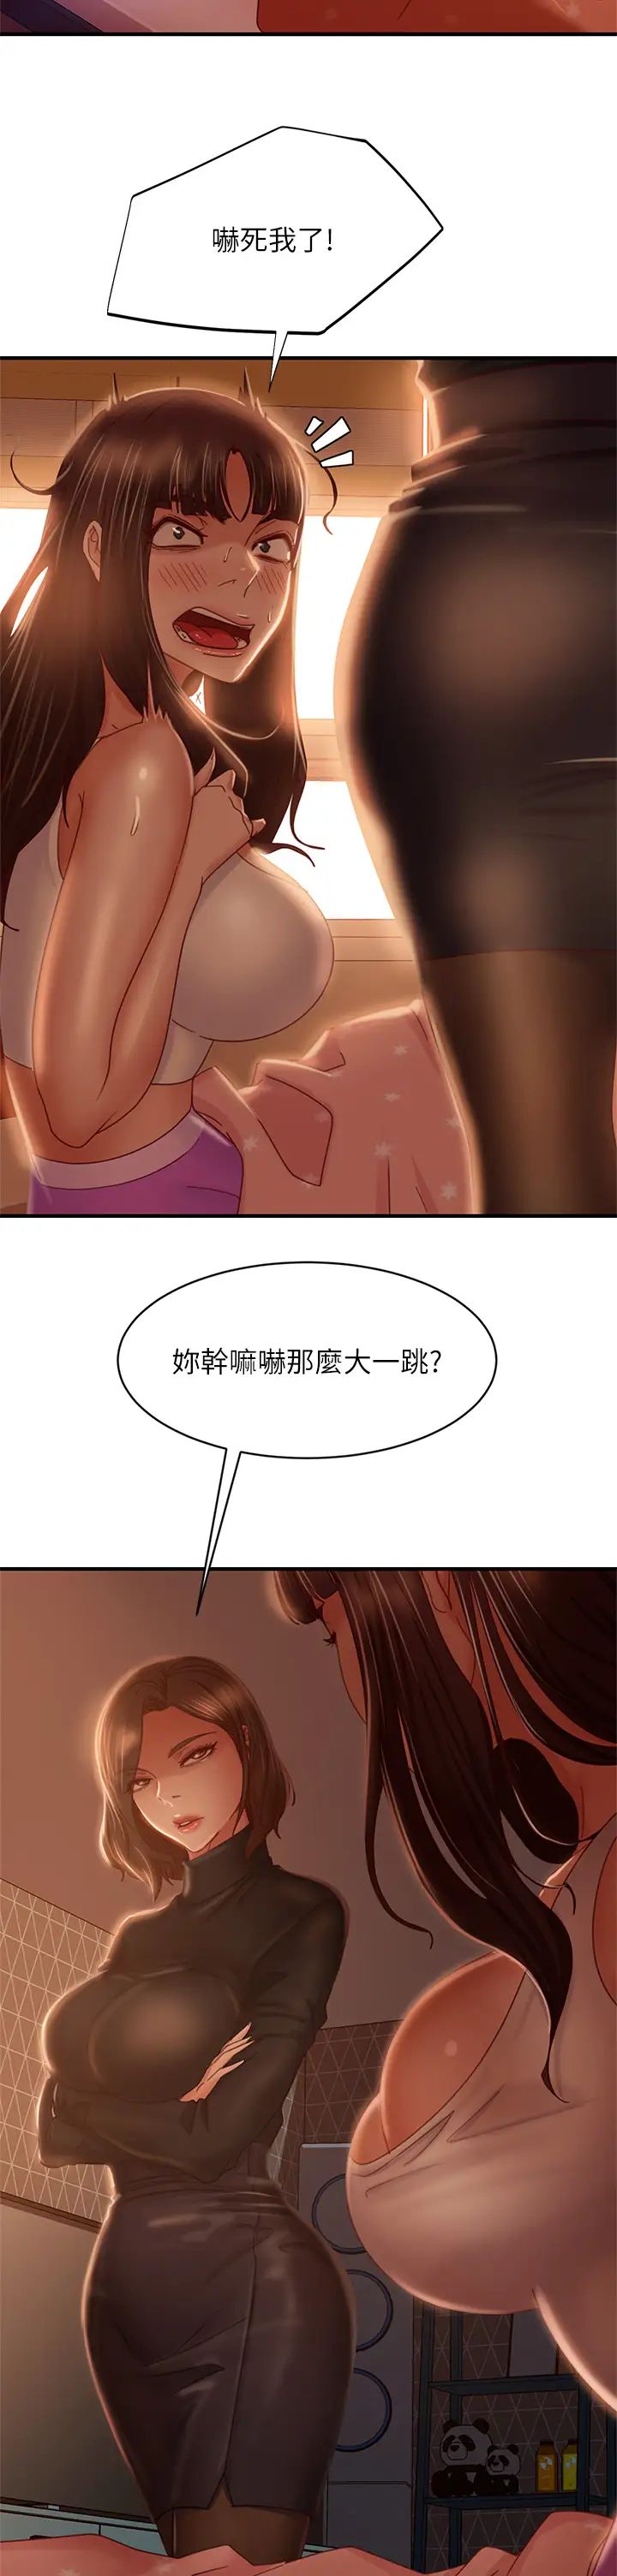 韩国污漫画 不良女房客 第33话娜丽与惠美的决裂 20